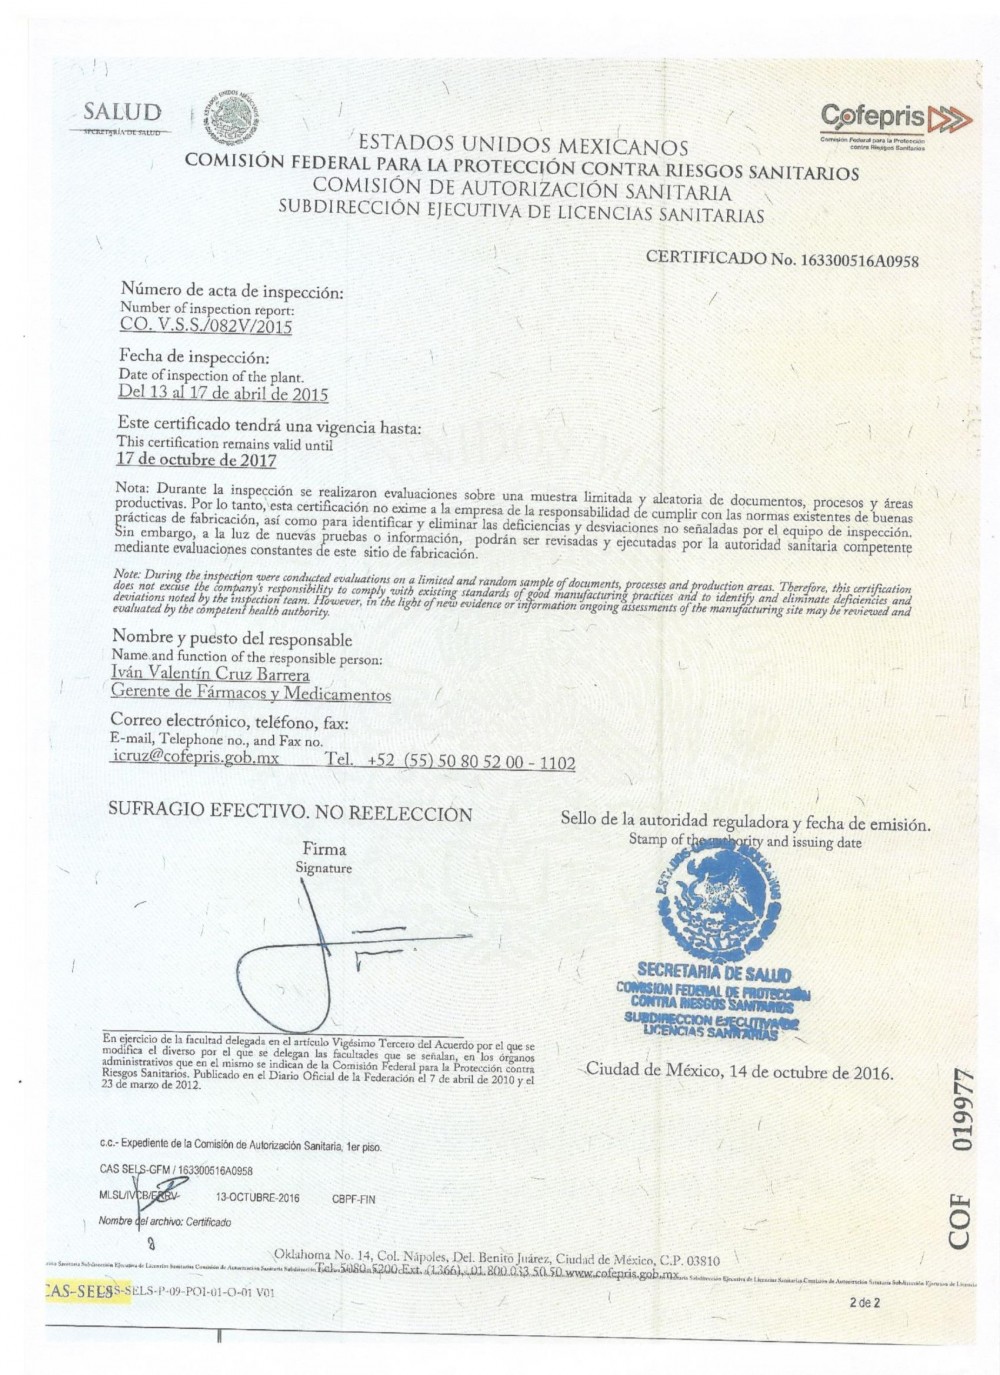 Cofepris GMP Certificate